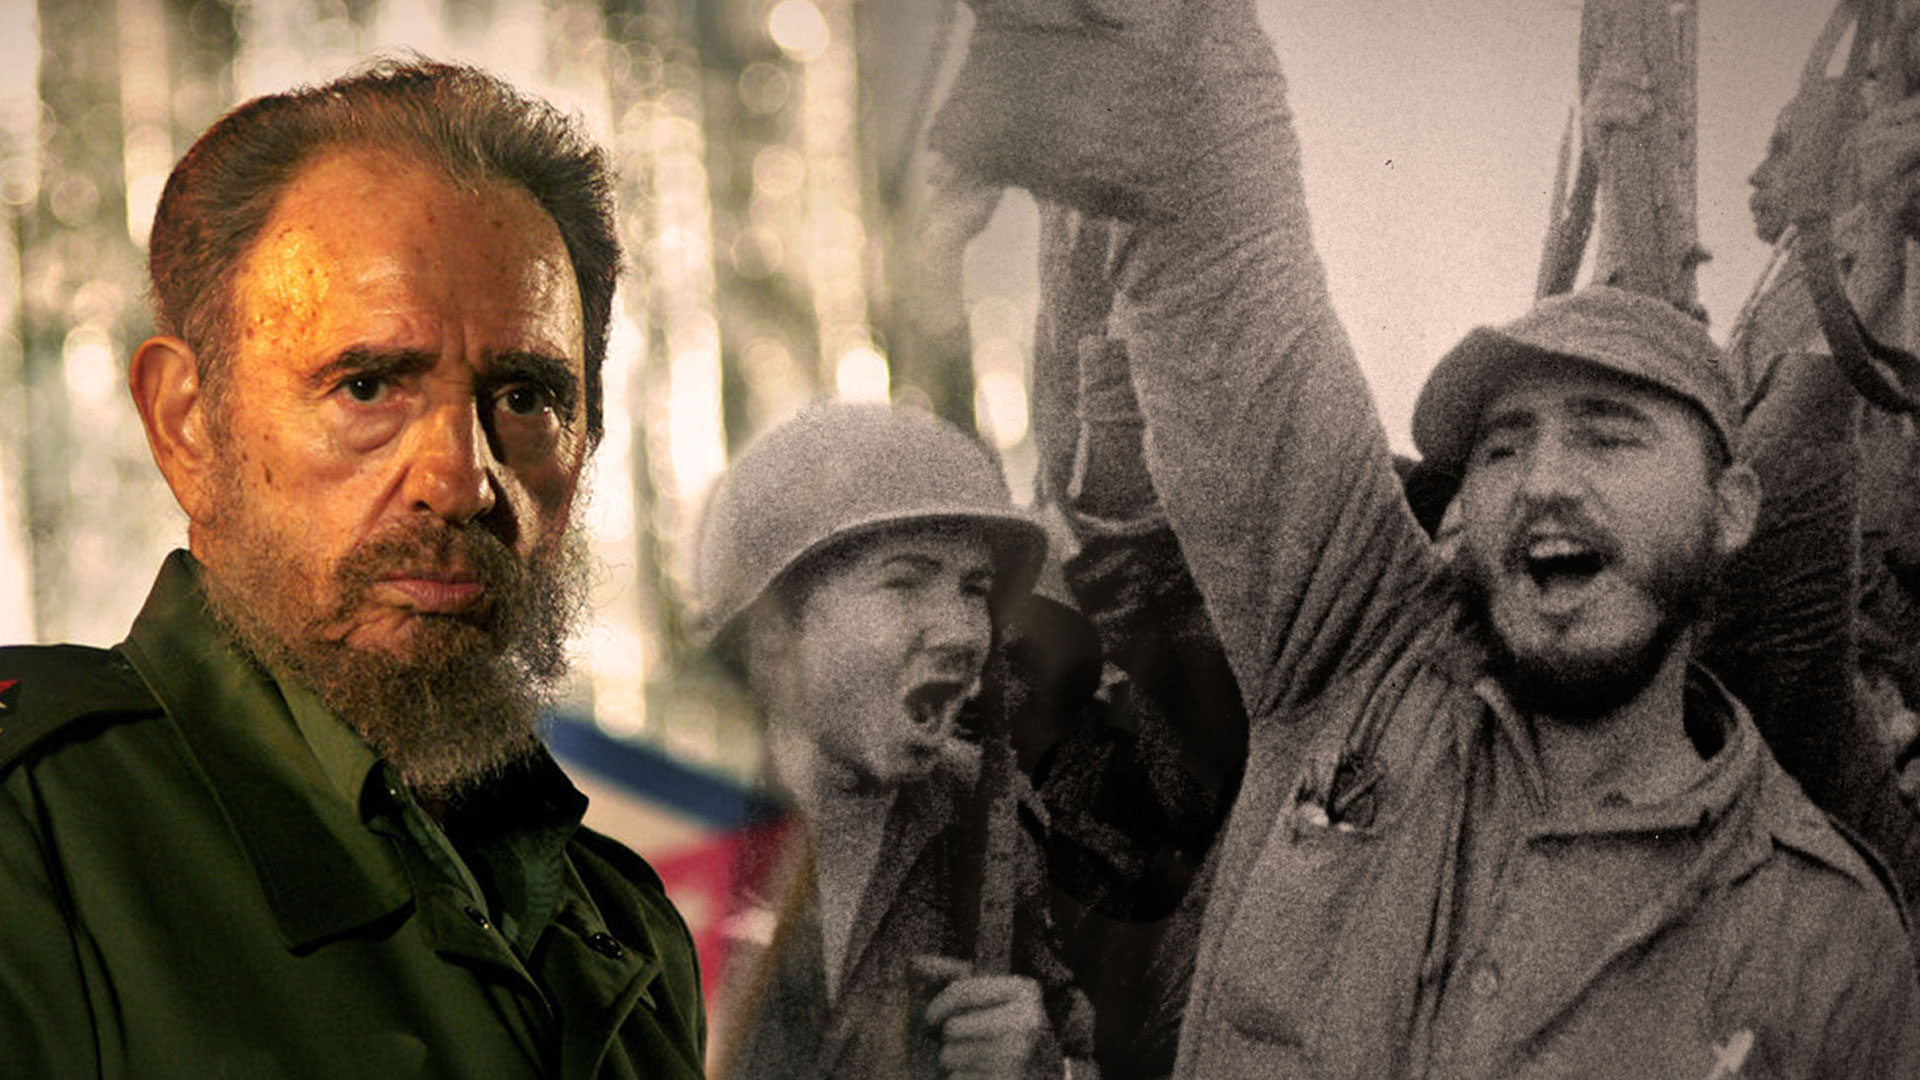 Fidel Castro dead at 90